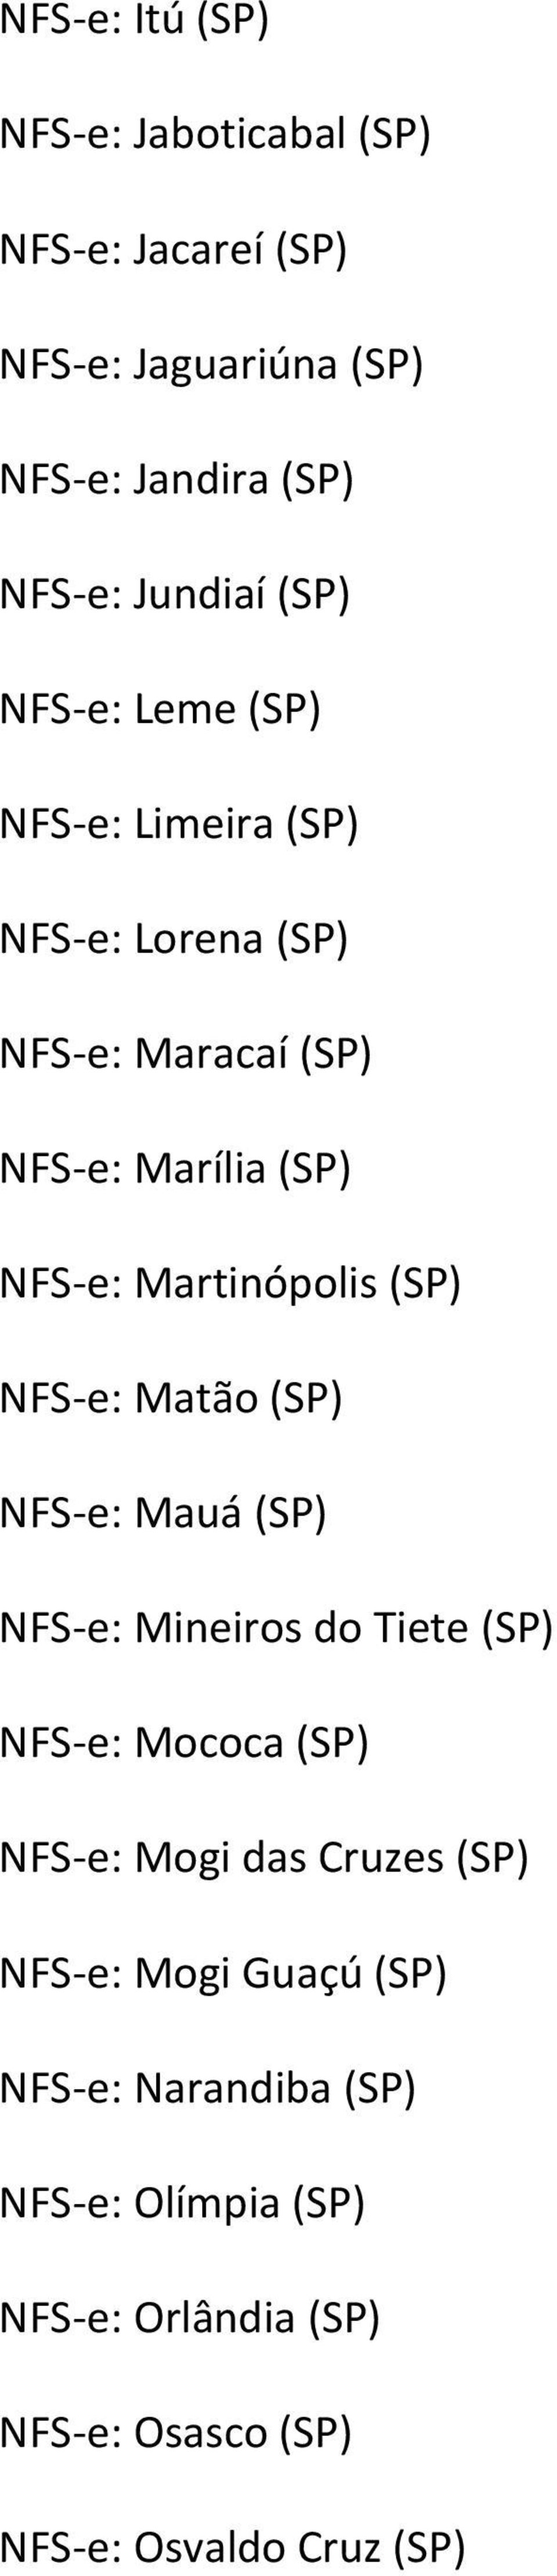 (SP) NFS e: Matão (SP) NFS e: Mauá (SP) NFS e: Mineiros do Tiete (SP) NFS e: Mococa (SP) NFS e: Mogi das Cruzes (SP) NFS